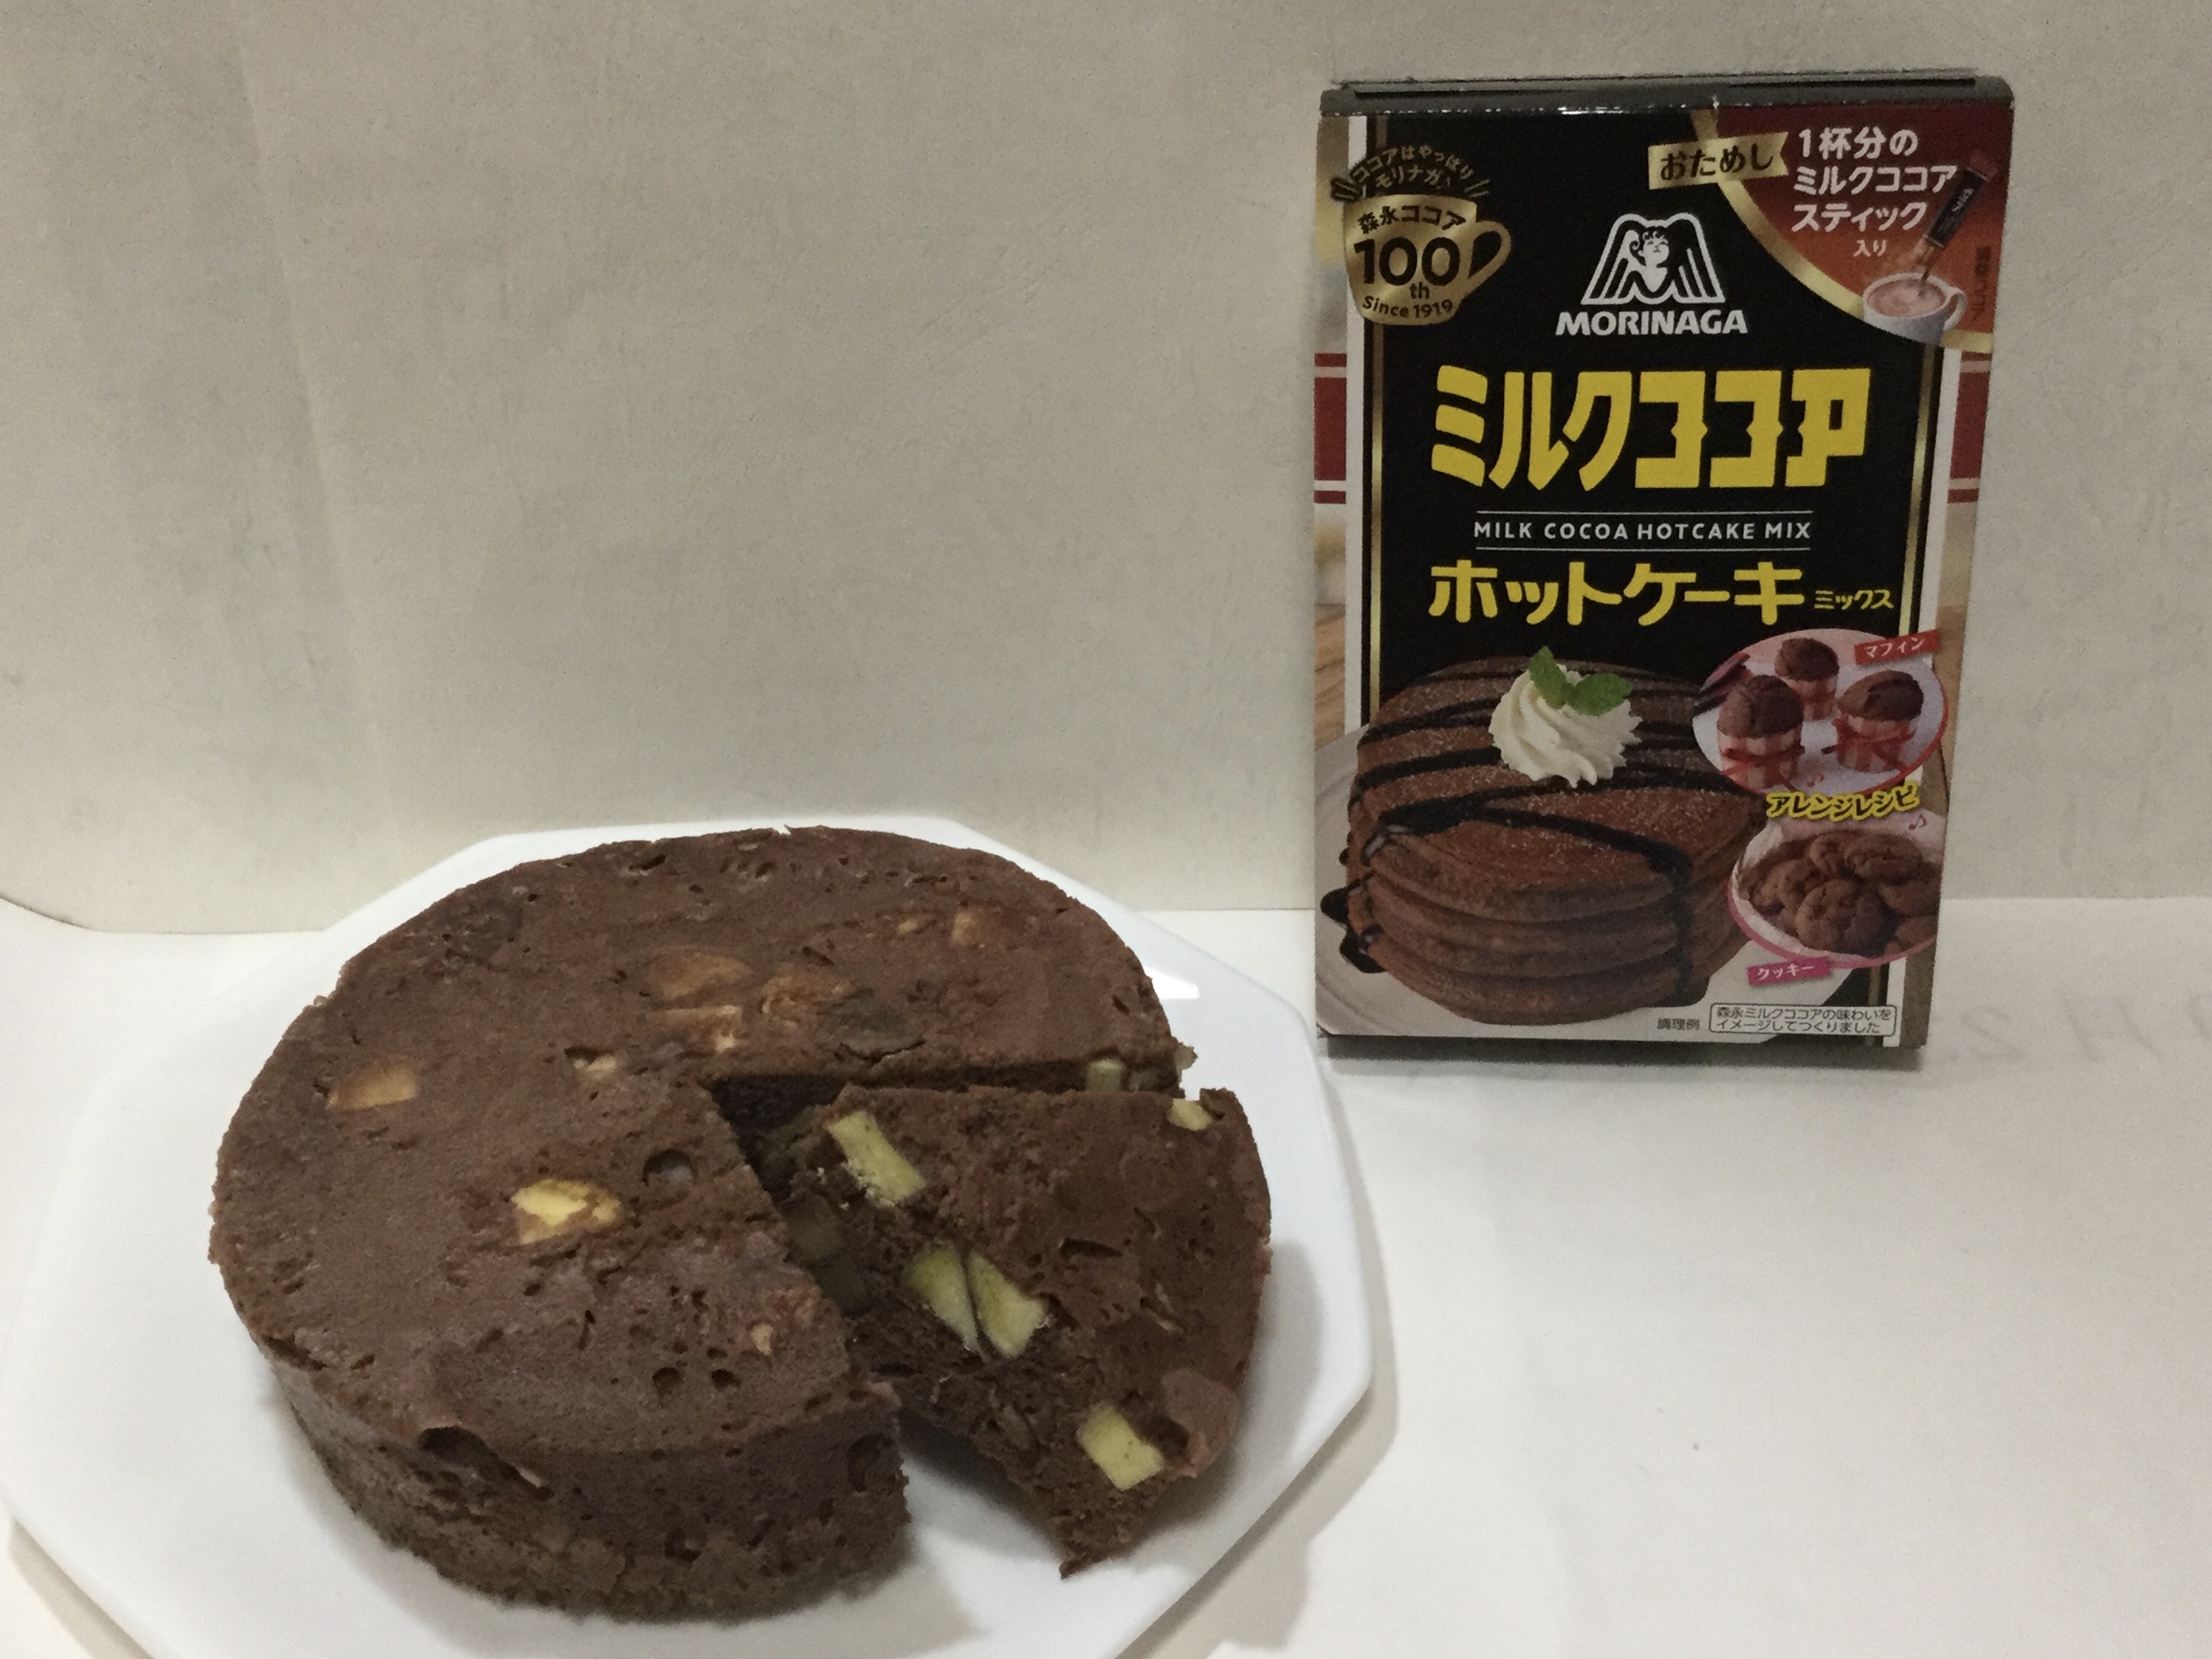 ミルクココアホットケーキミックスで さつまいも入りケーキを 焼きました エンゼルplus By 森永製菓